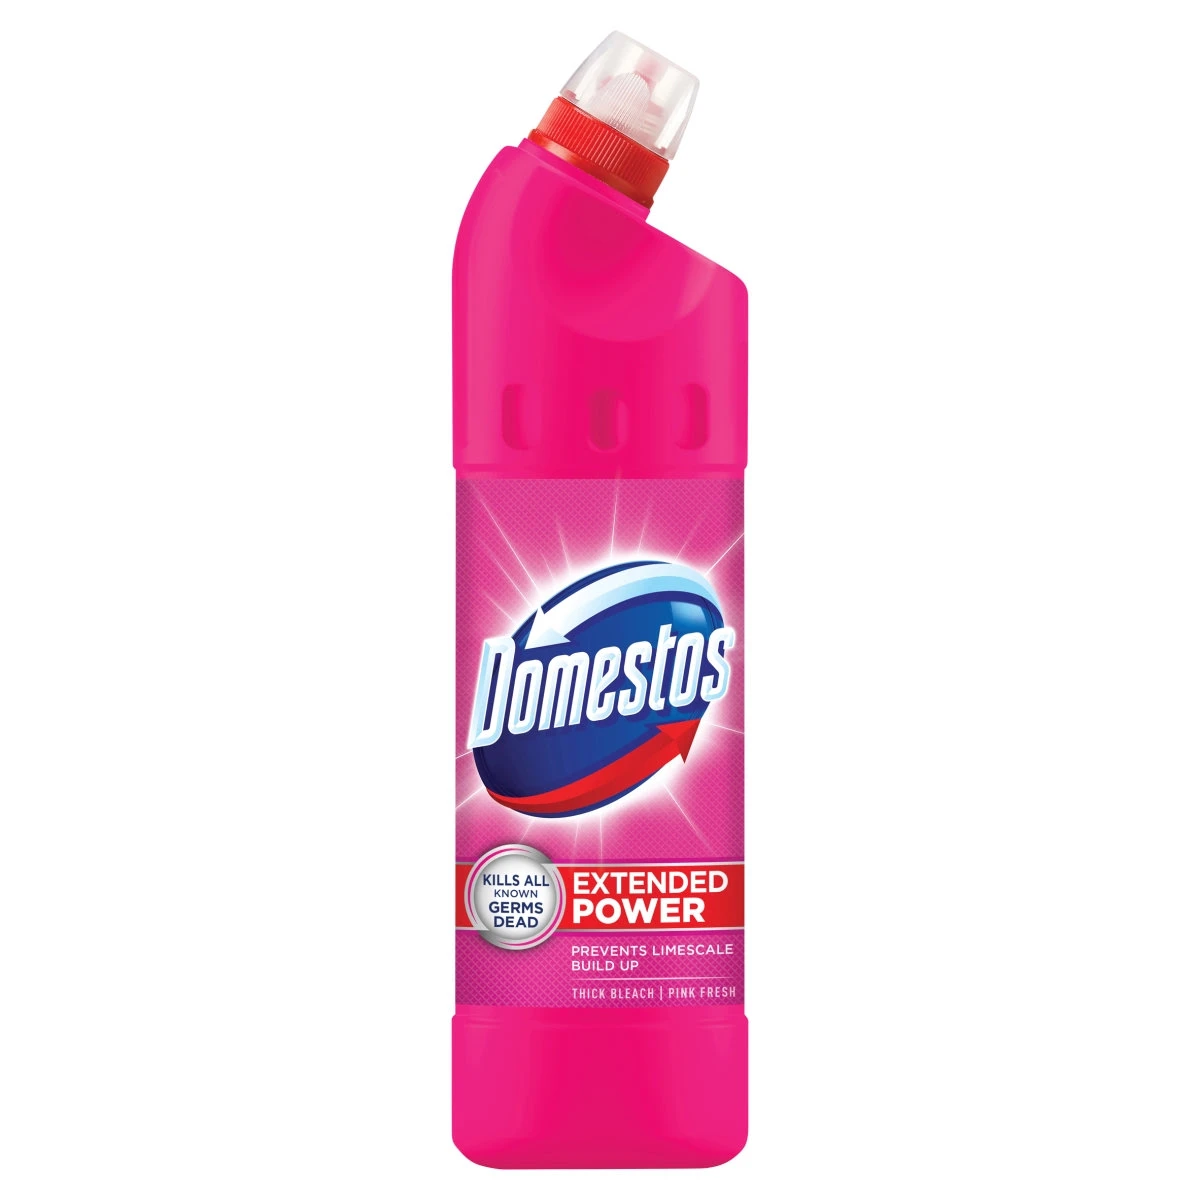 Domestos Extended Power tisztítószer 750 ml pink fresh